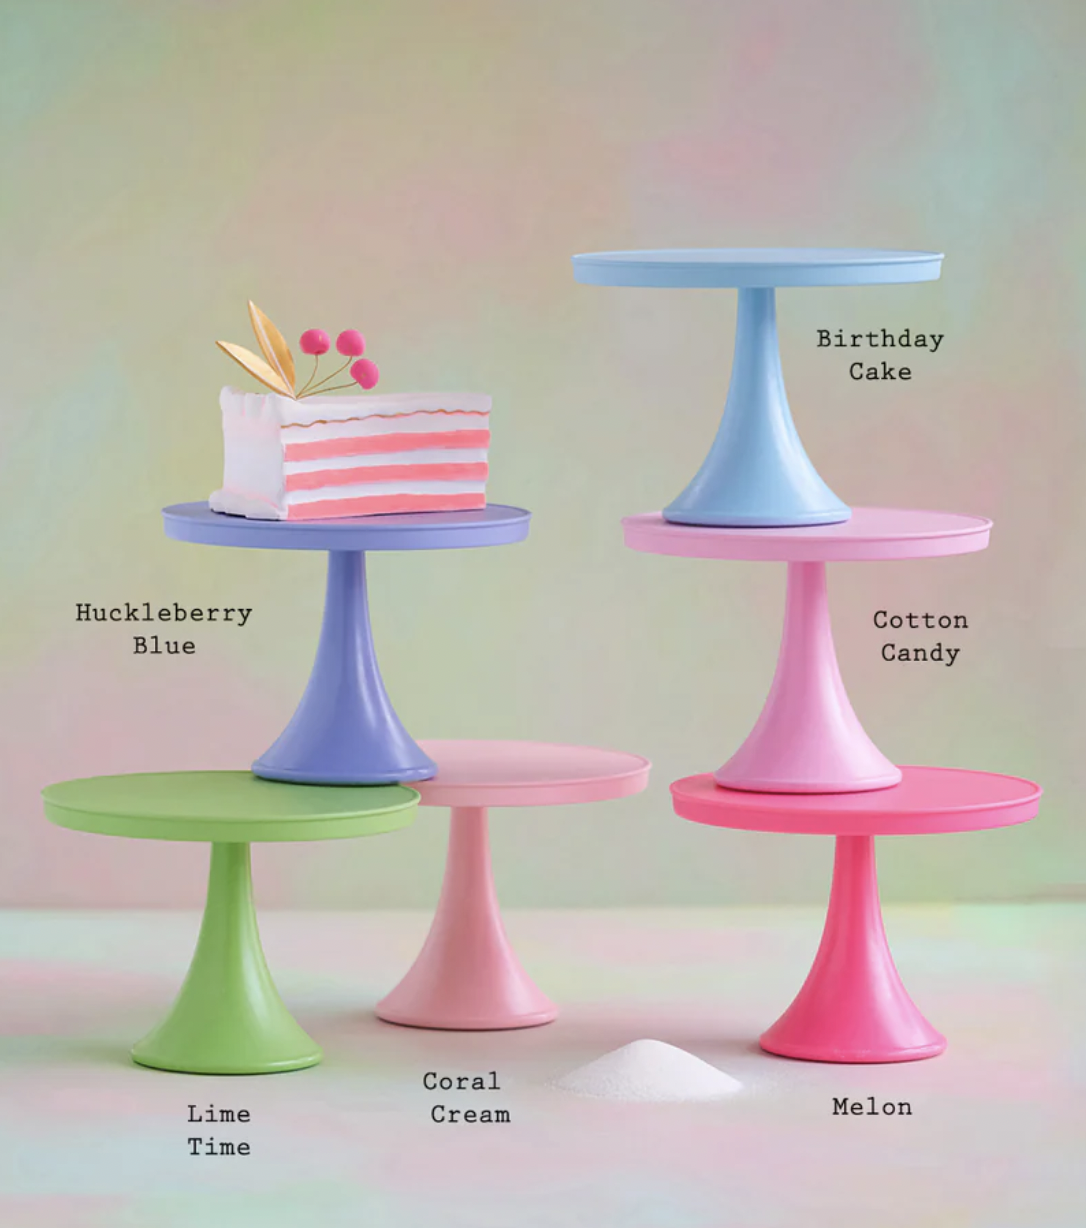 LG Rainbow Cake Plate